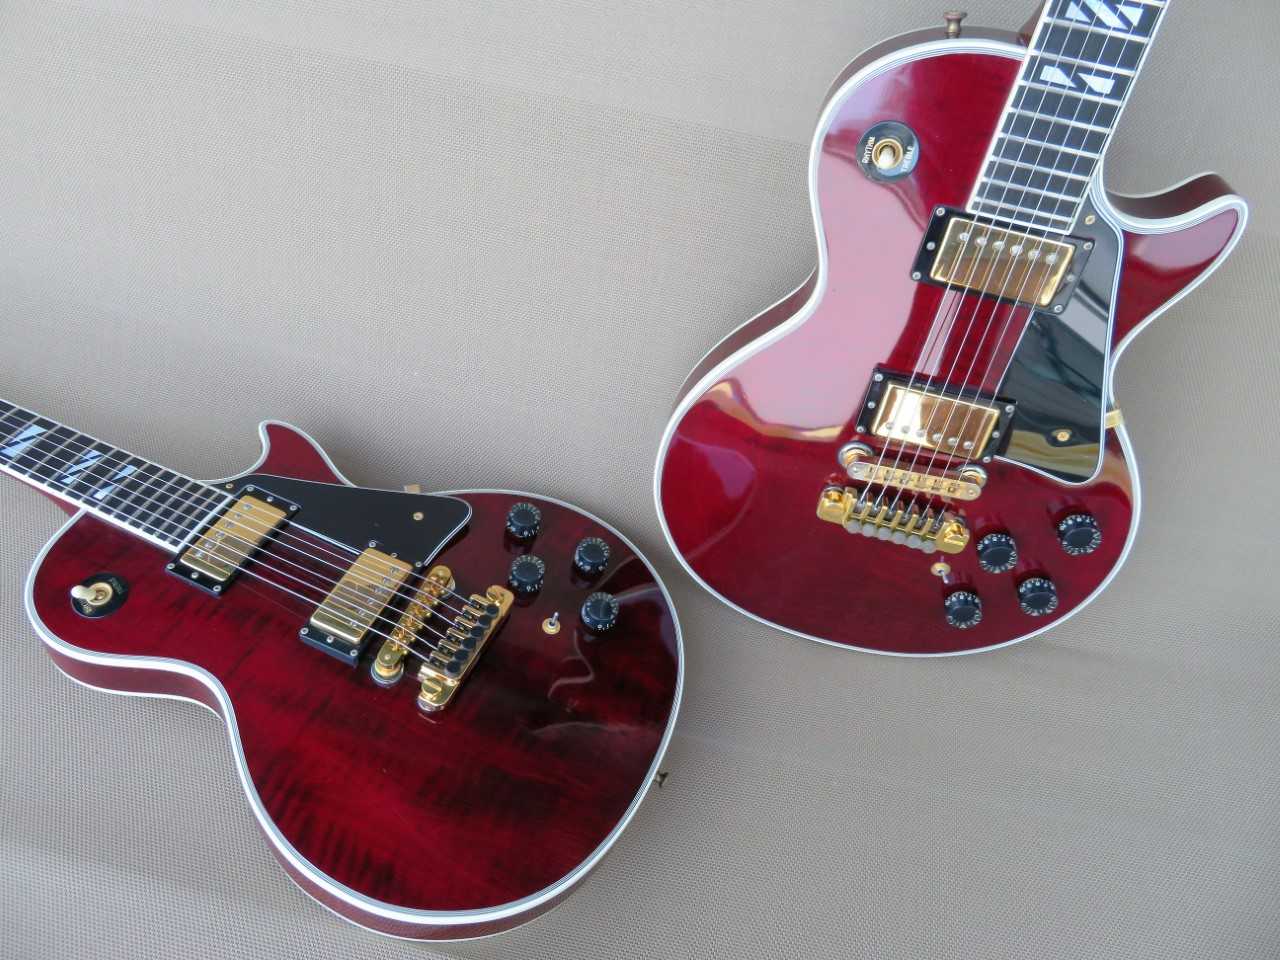 68 Gibson Les Paul Anniversary 25-50 weinrot 00 Guitar Heaven Sammlung b.jpg